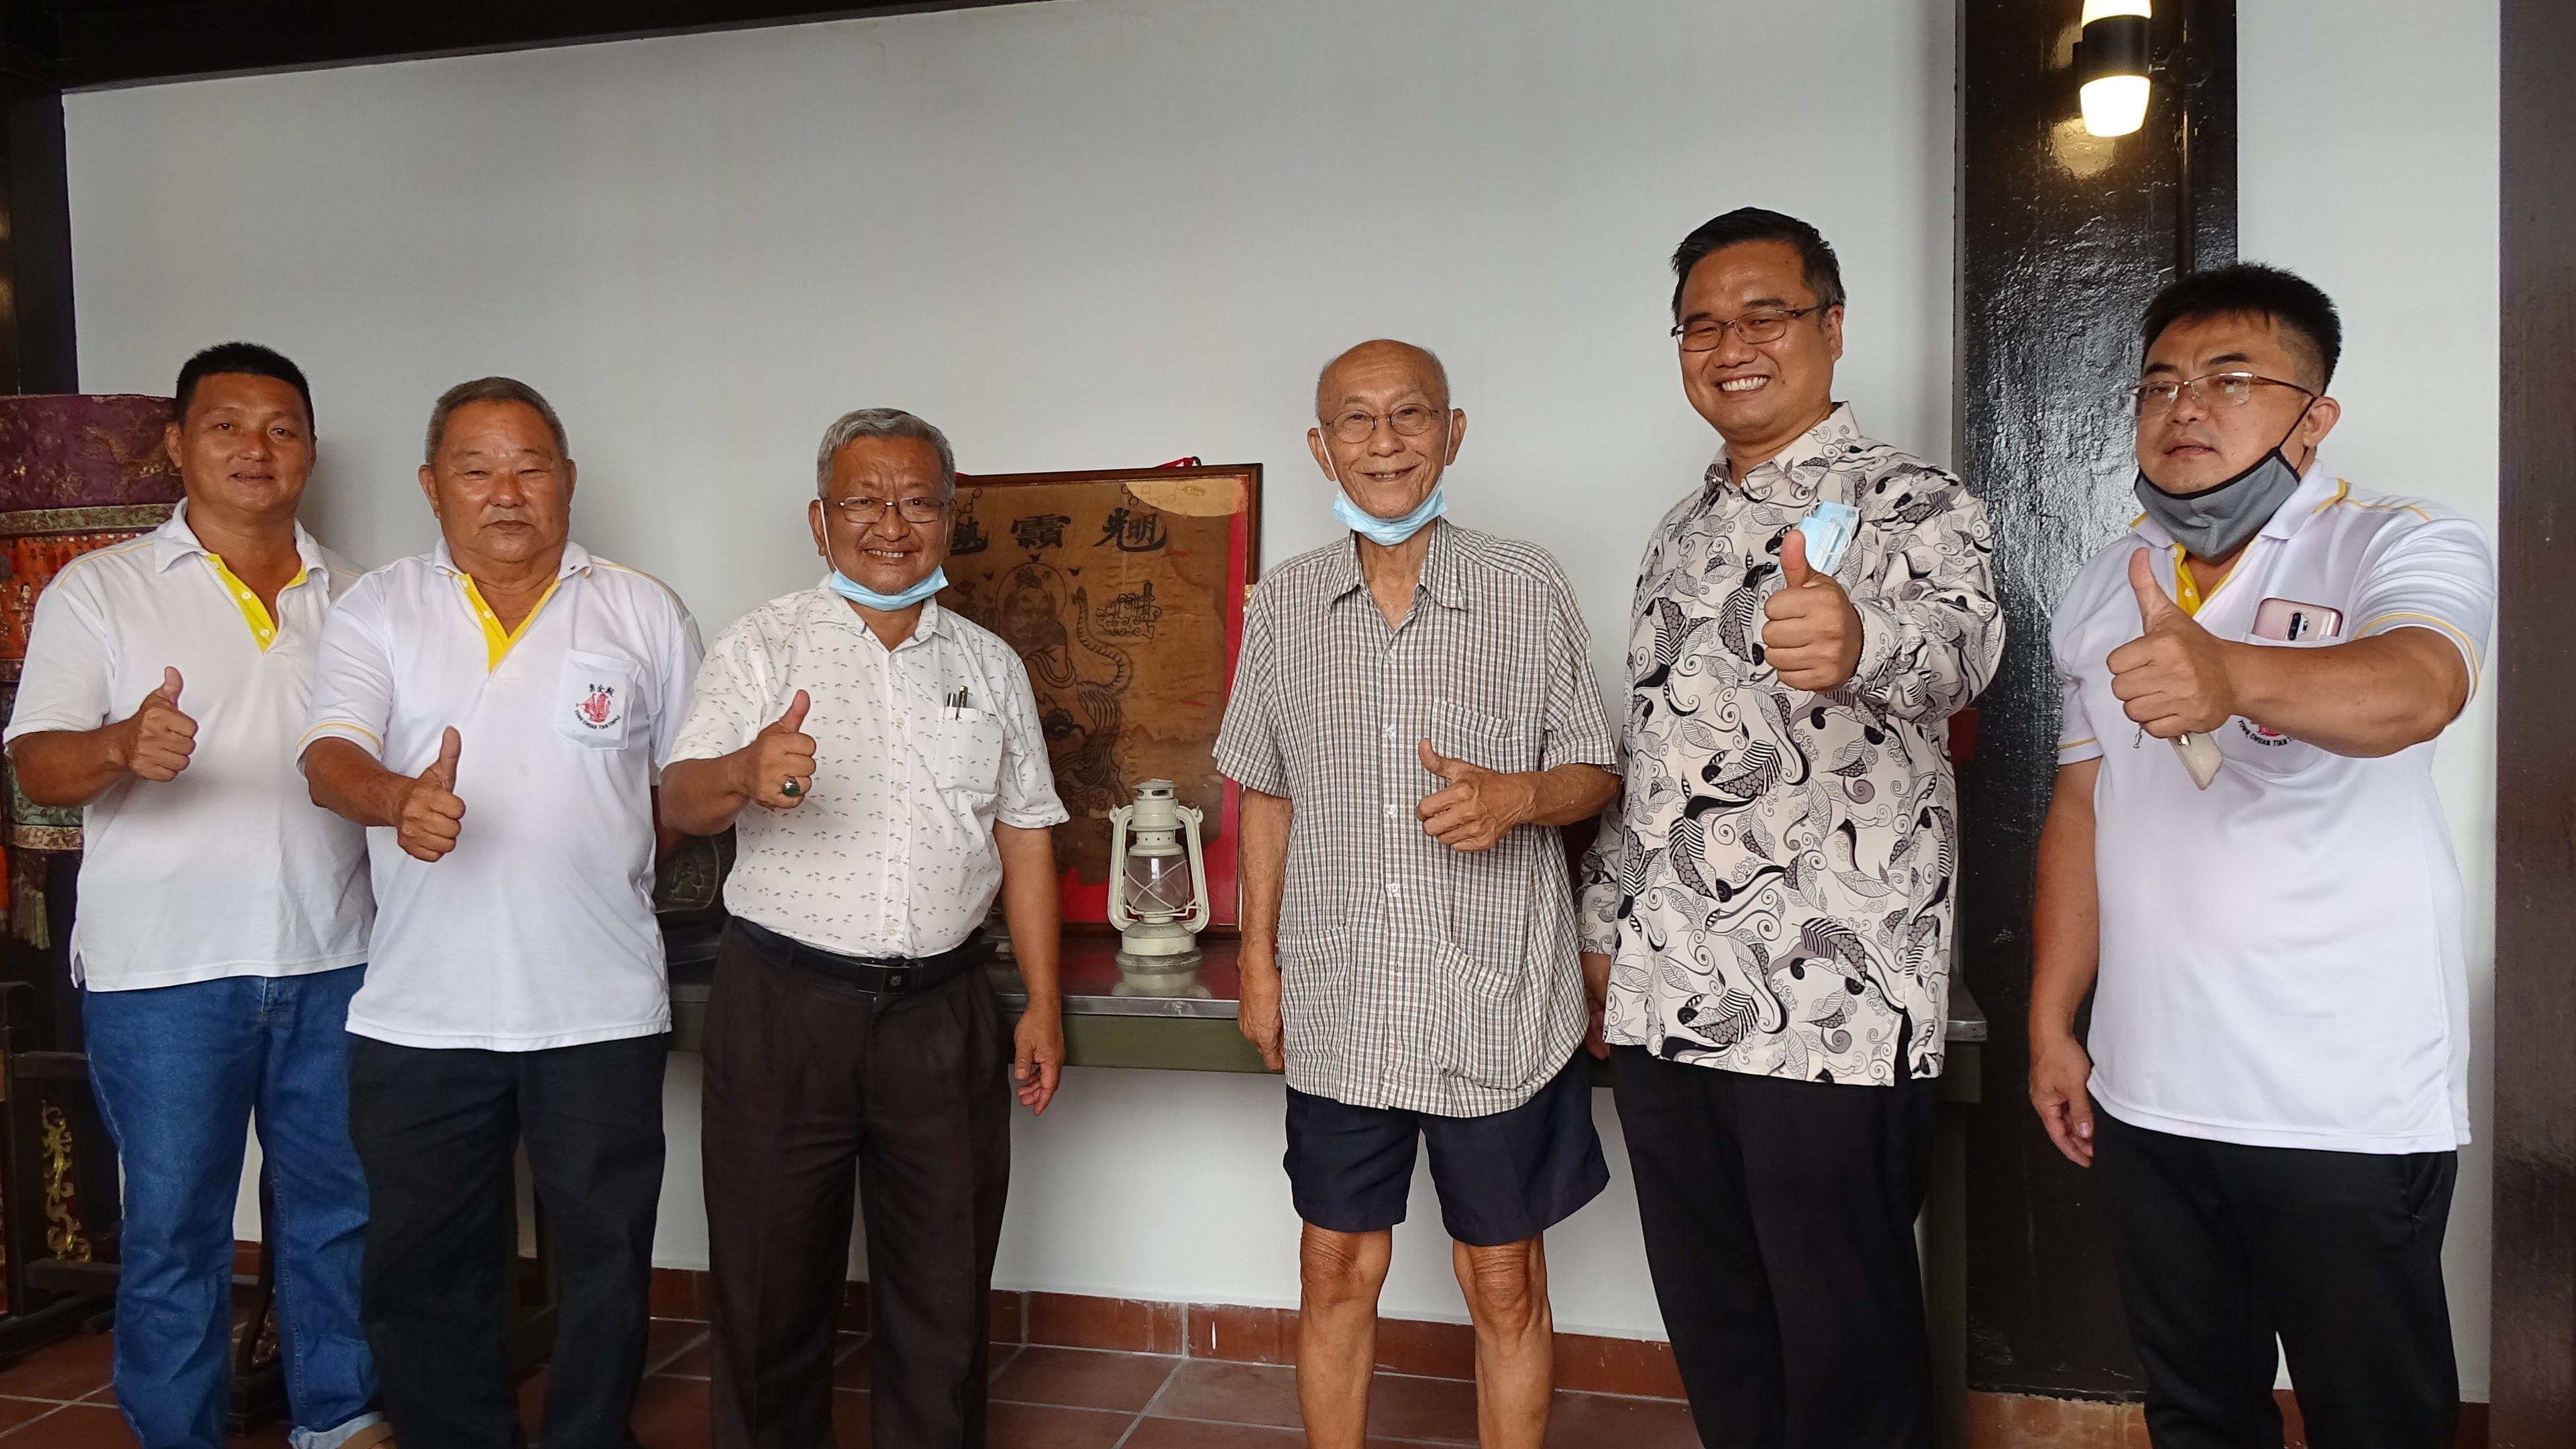 Former Malacca High School teacher meet his pupil in Wangkang museum